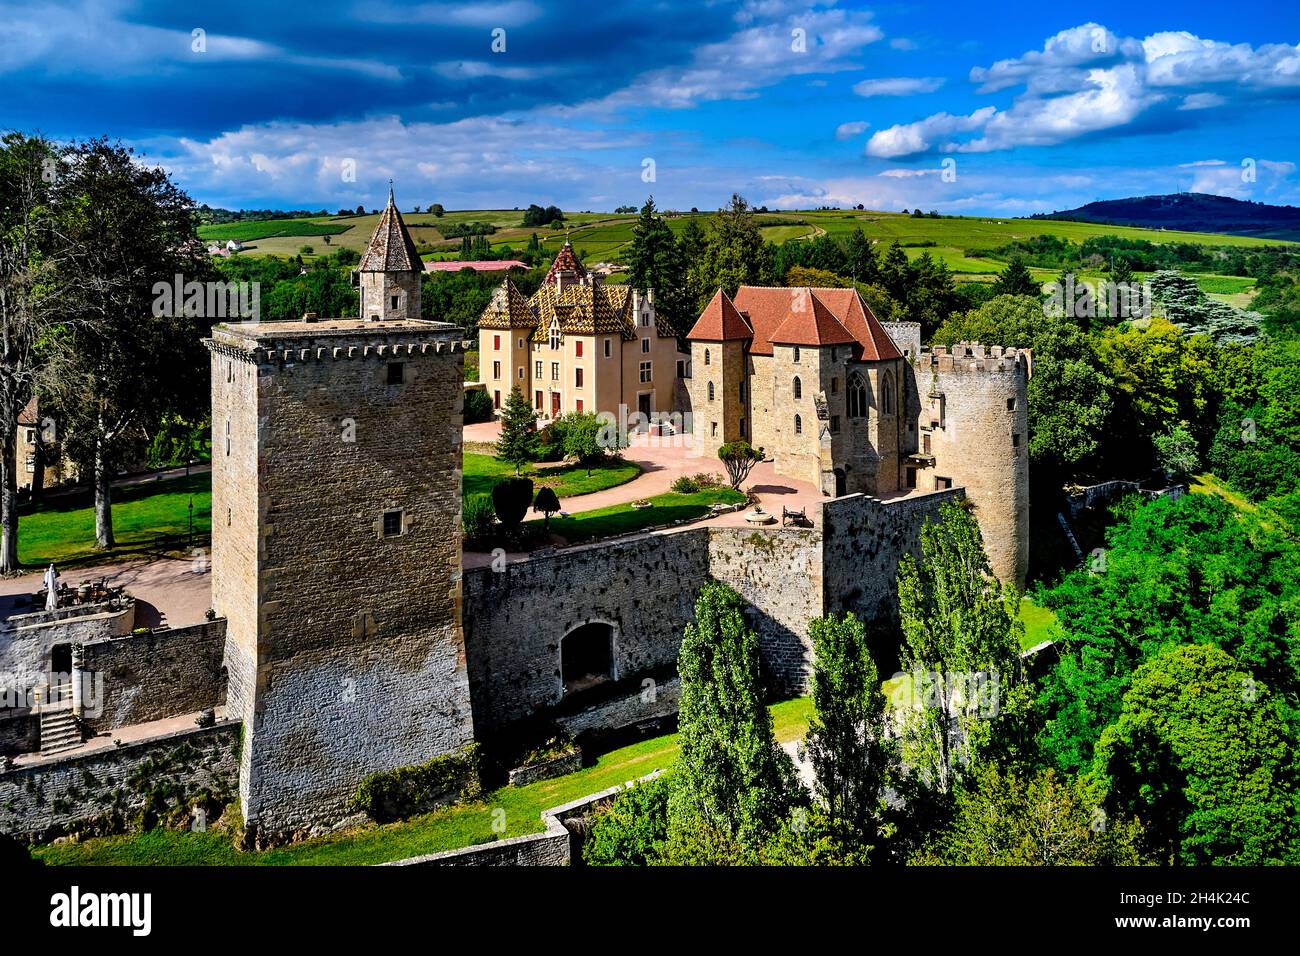 France, Saone et Loire, Chateau de Couches castle Stock Photo - Alamy